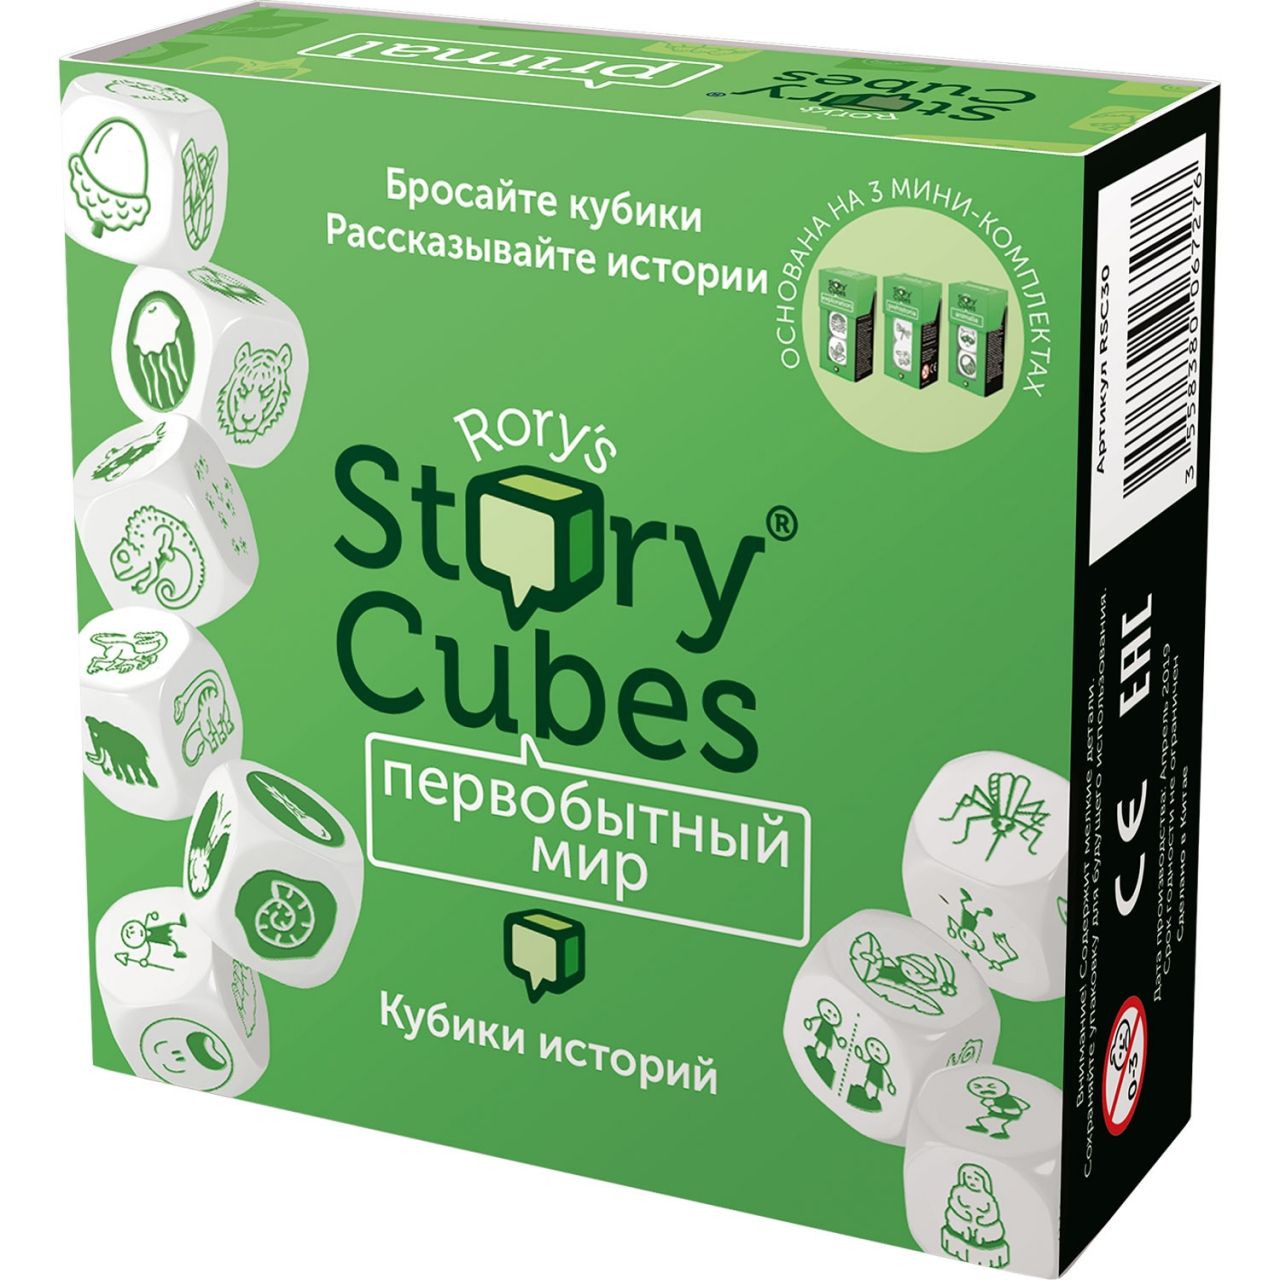 Настольная игра RORYS STORY CUBES RSC30 кубики историй Первобытный мир настольная игра rubiks кубики историй герои